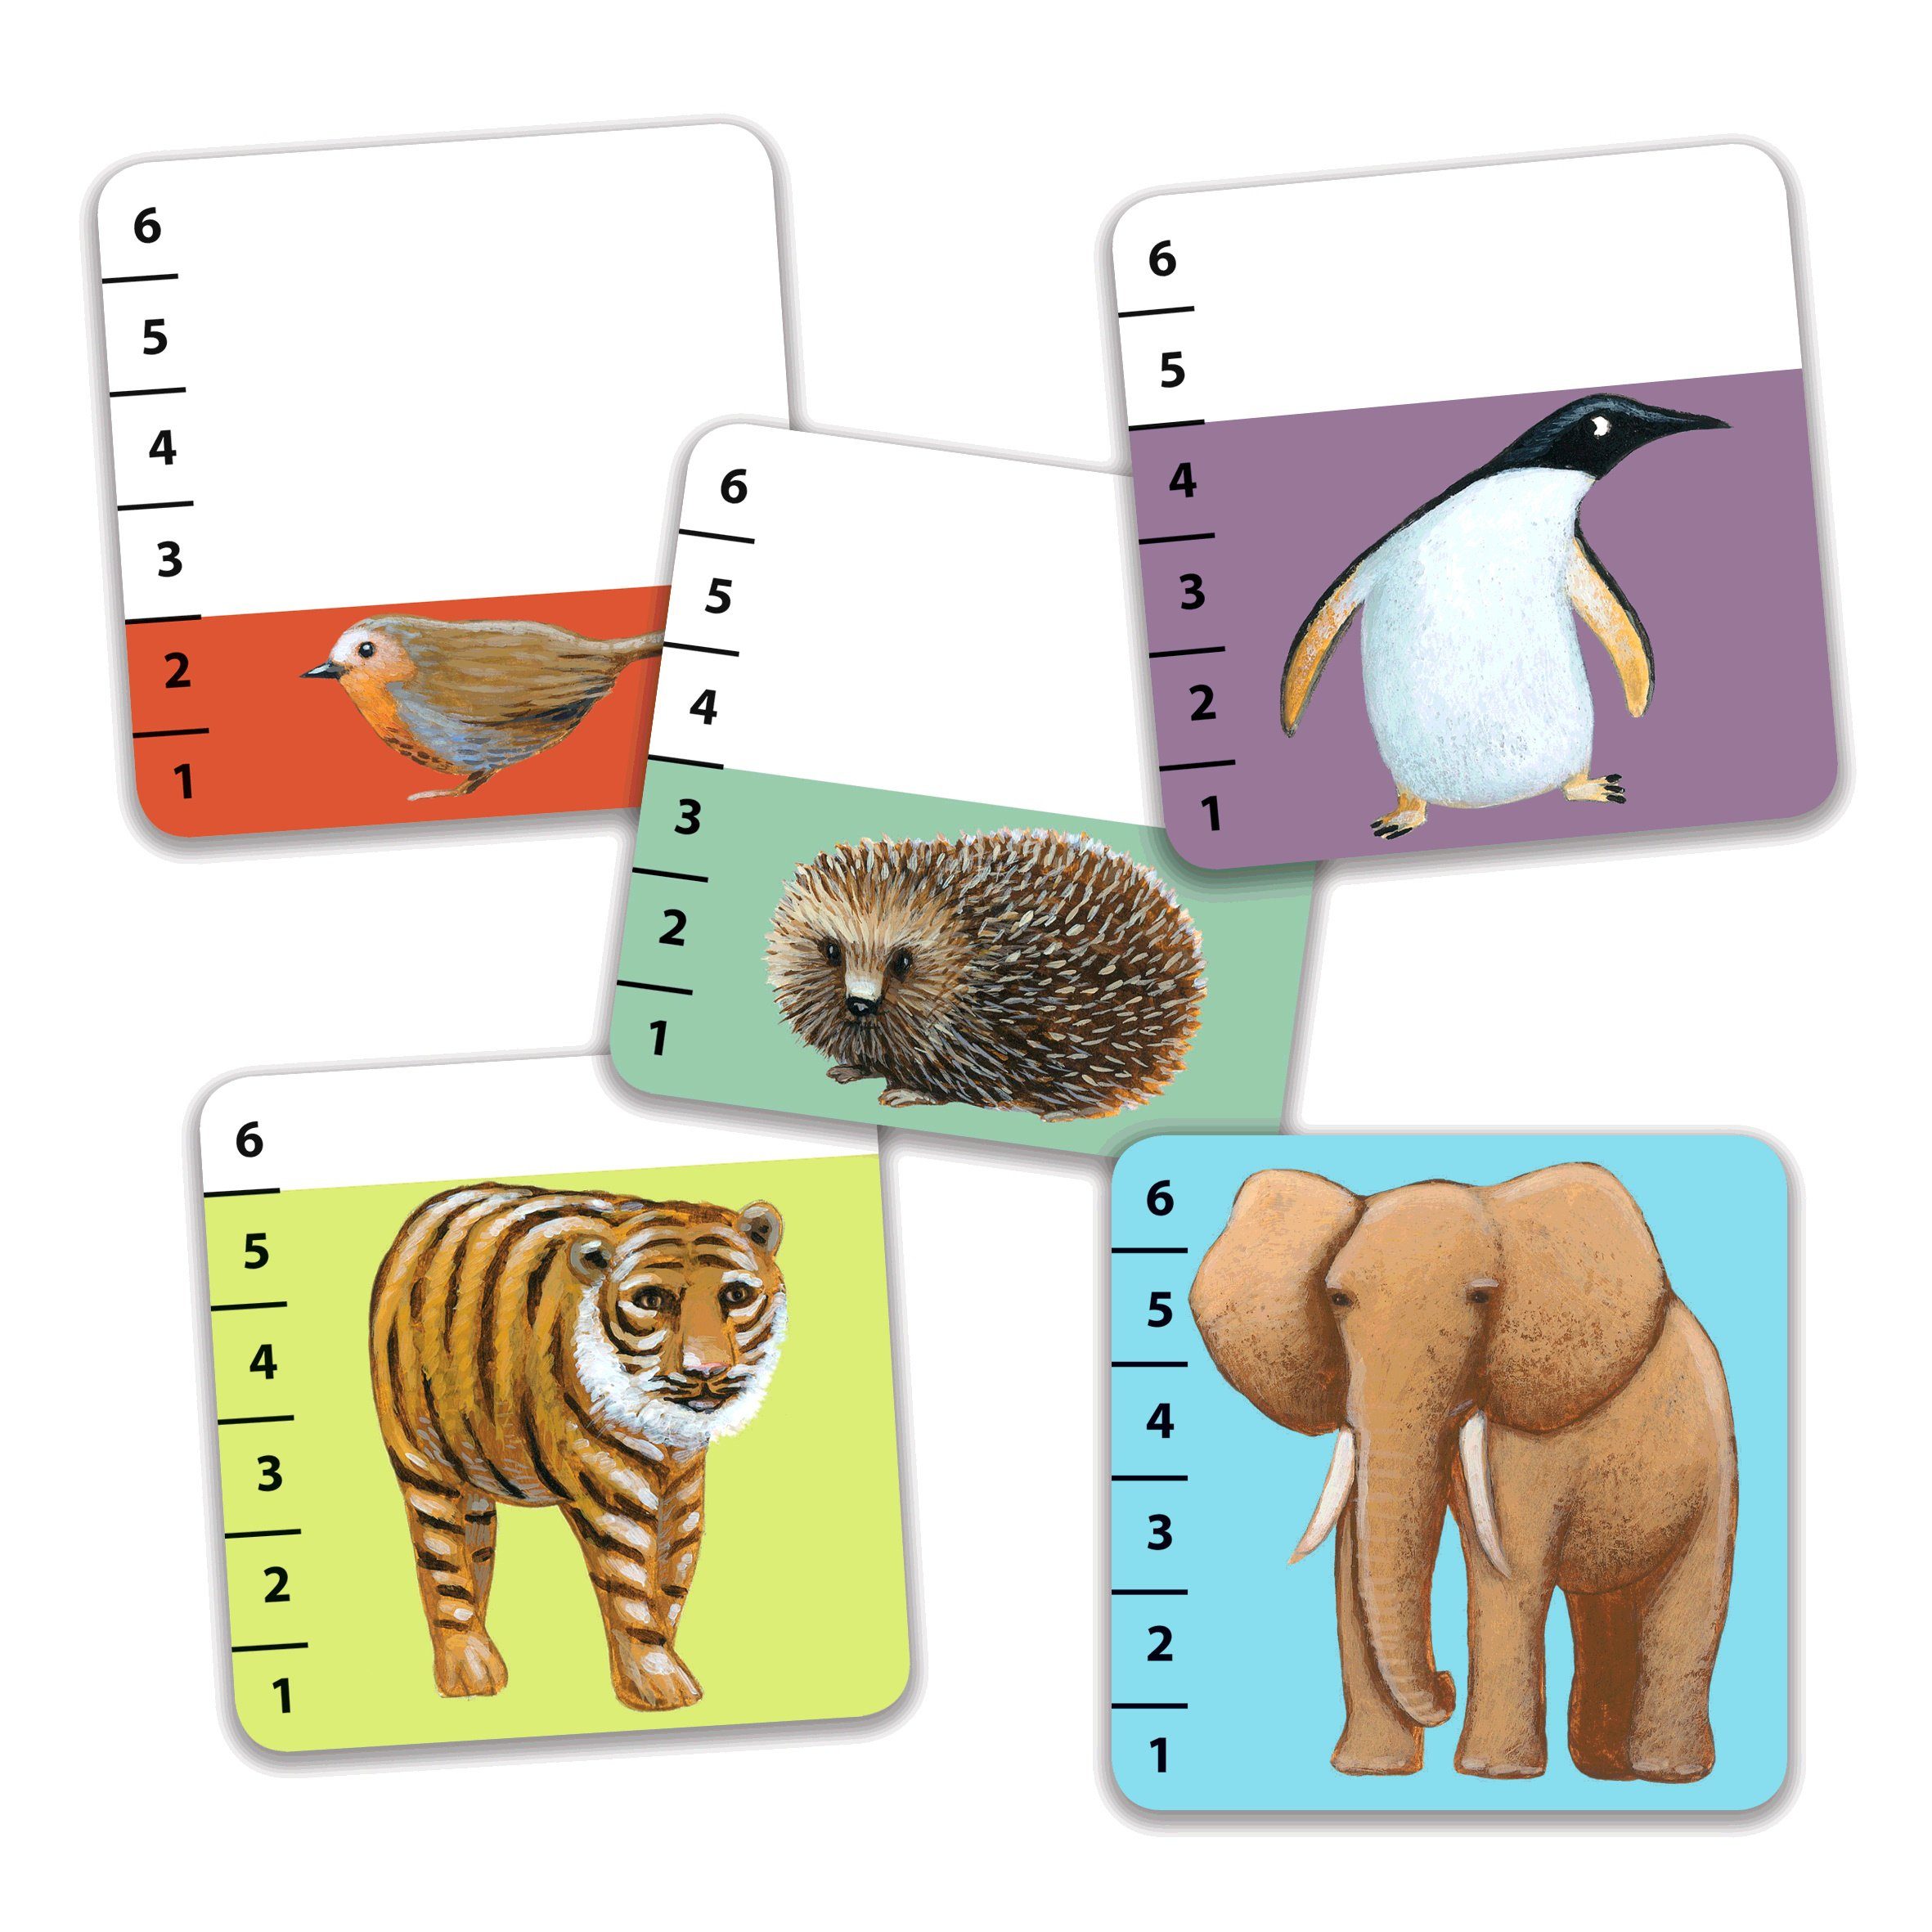 Stichspiel Spiel, verschiedenen Batanimo Kartenspiel Tier-Illustrationen mit DJECO